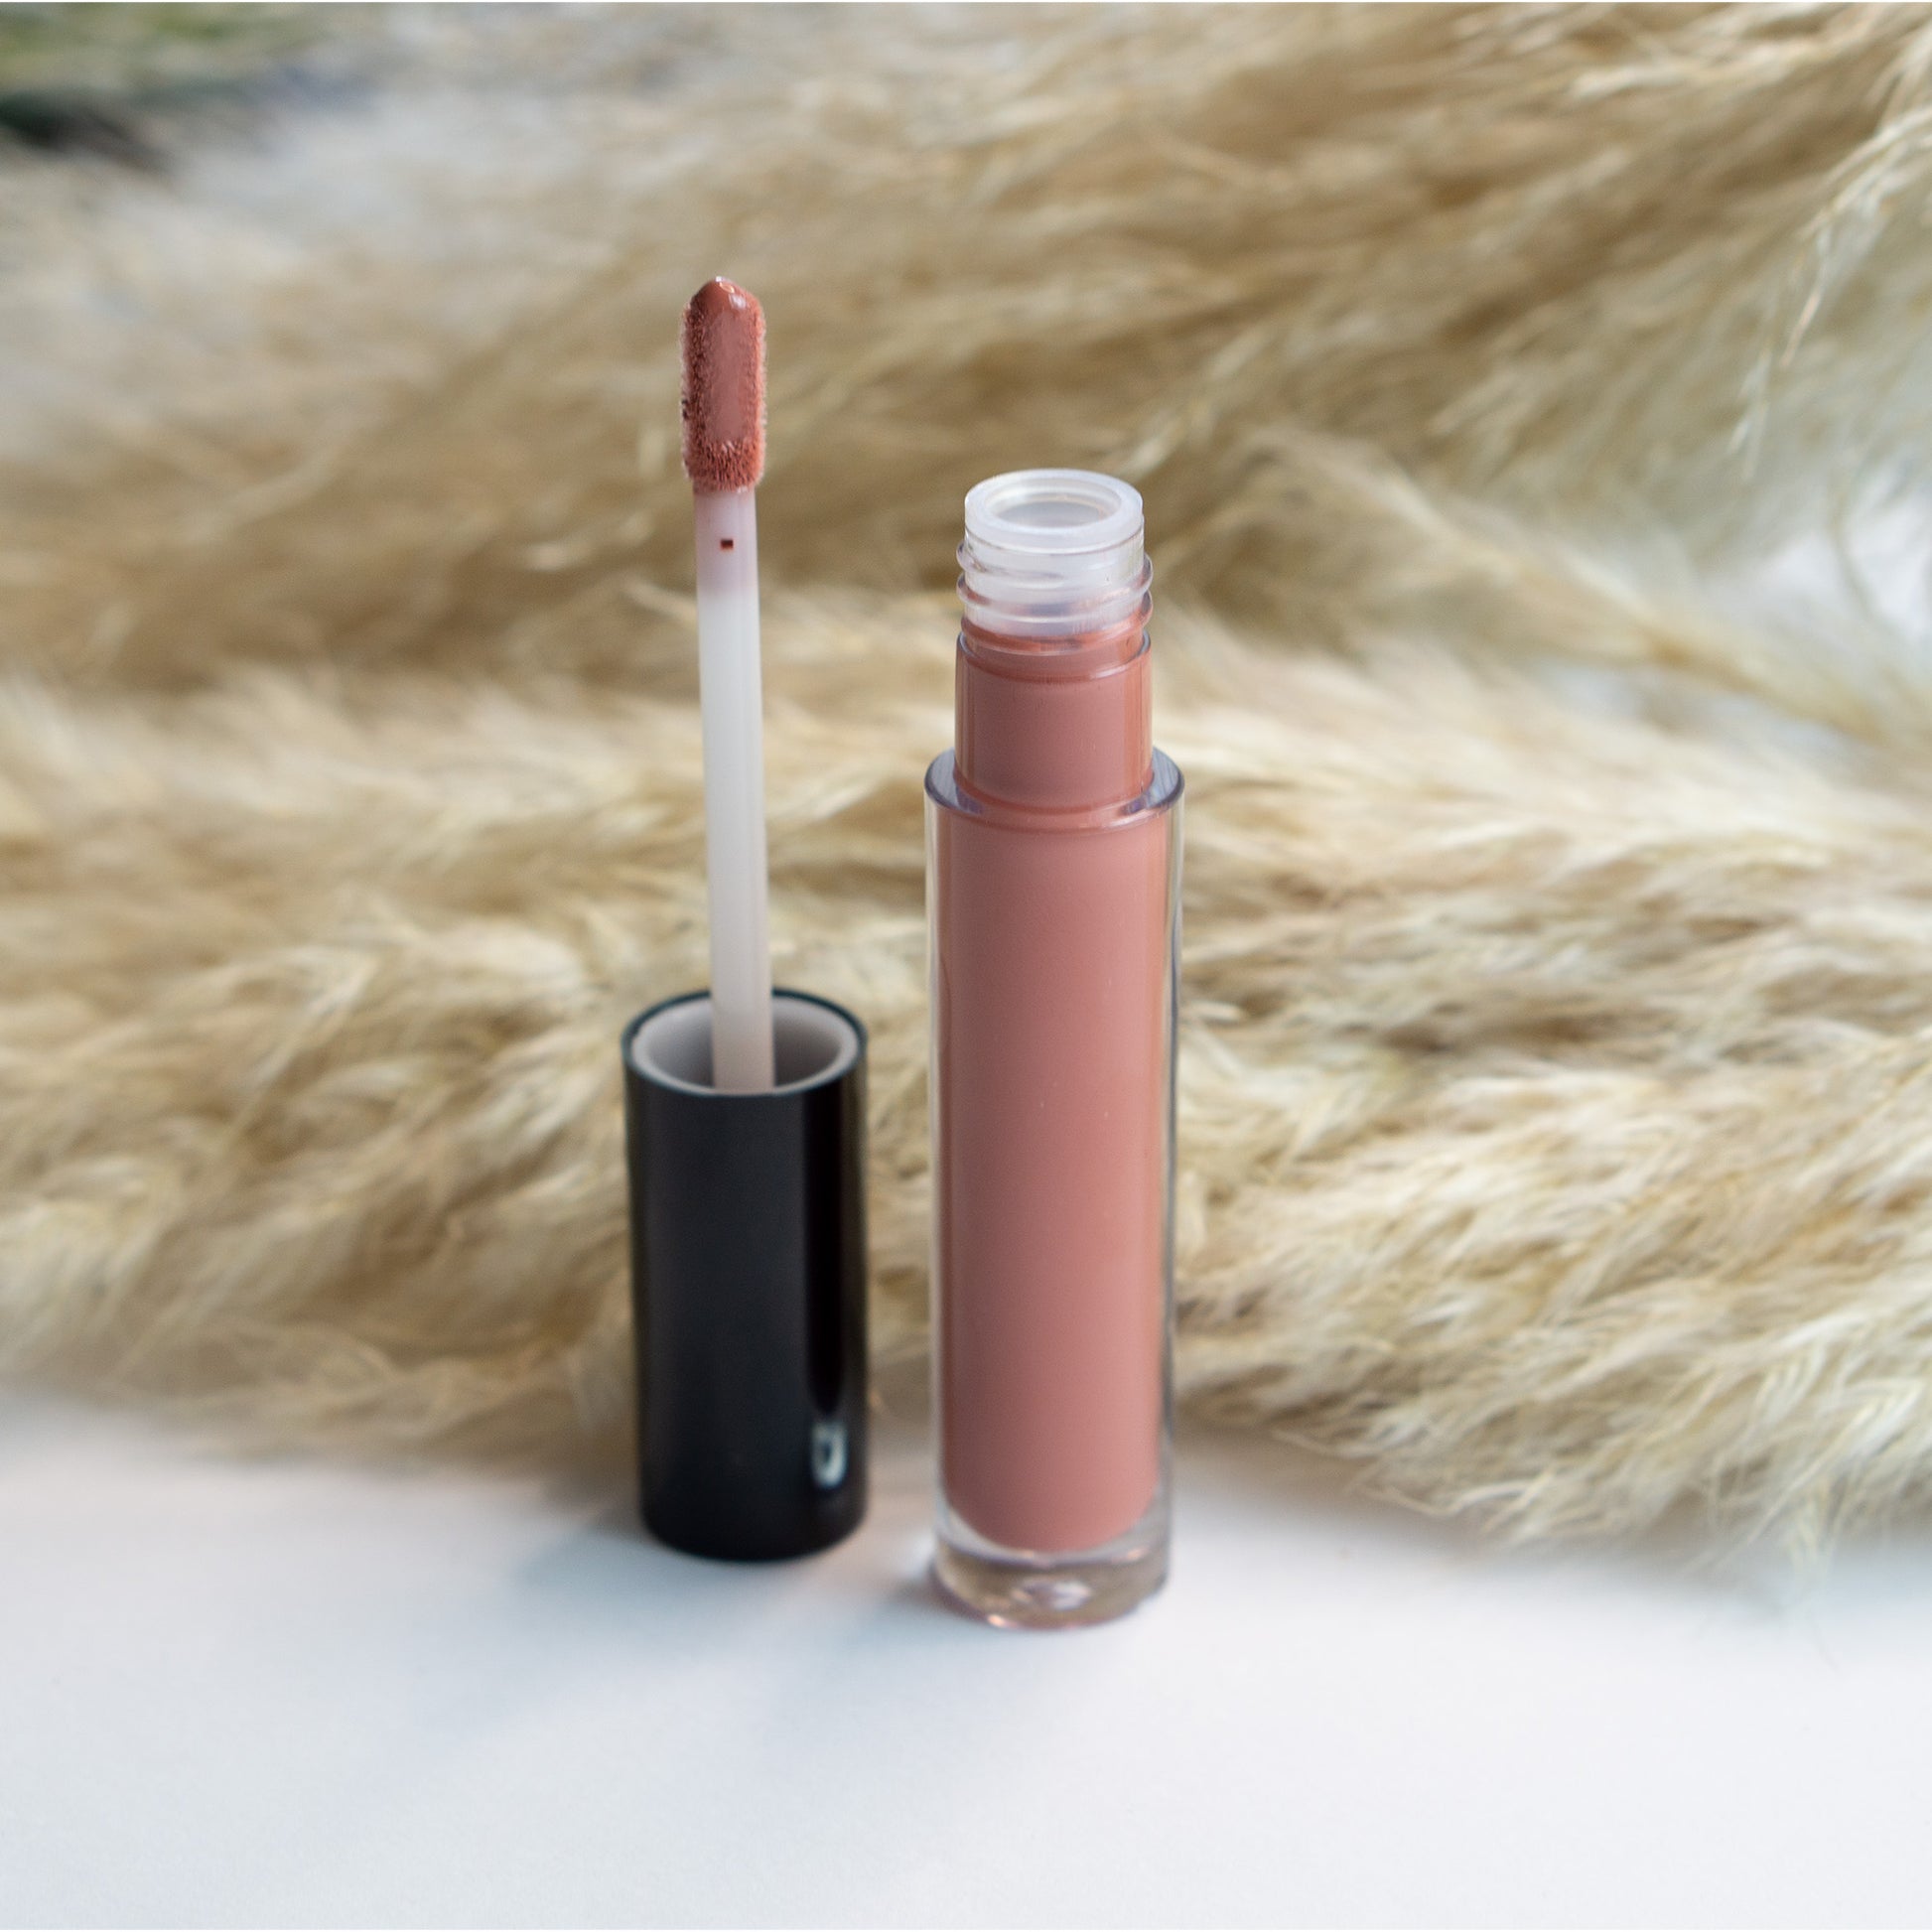 Poutastic Liquid Lip Gloss - Crimson | Sheer Tint for Fuller Lips, 5 mL / 0.17 fl oz 